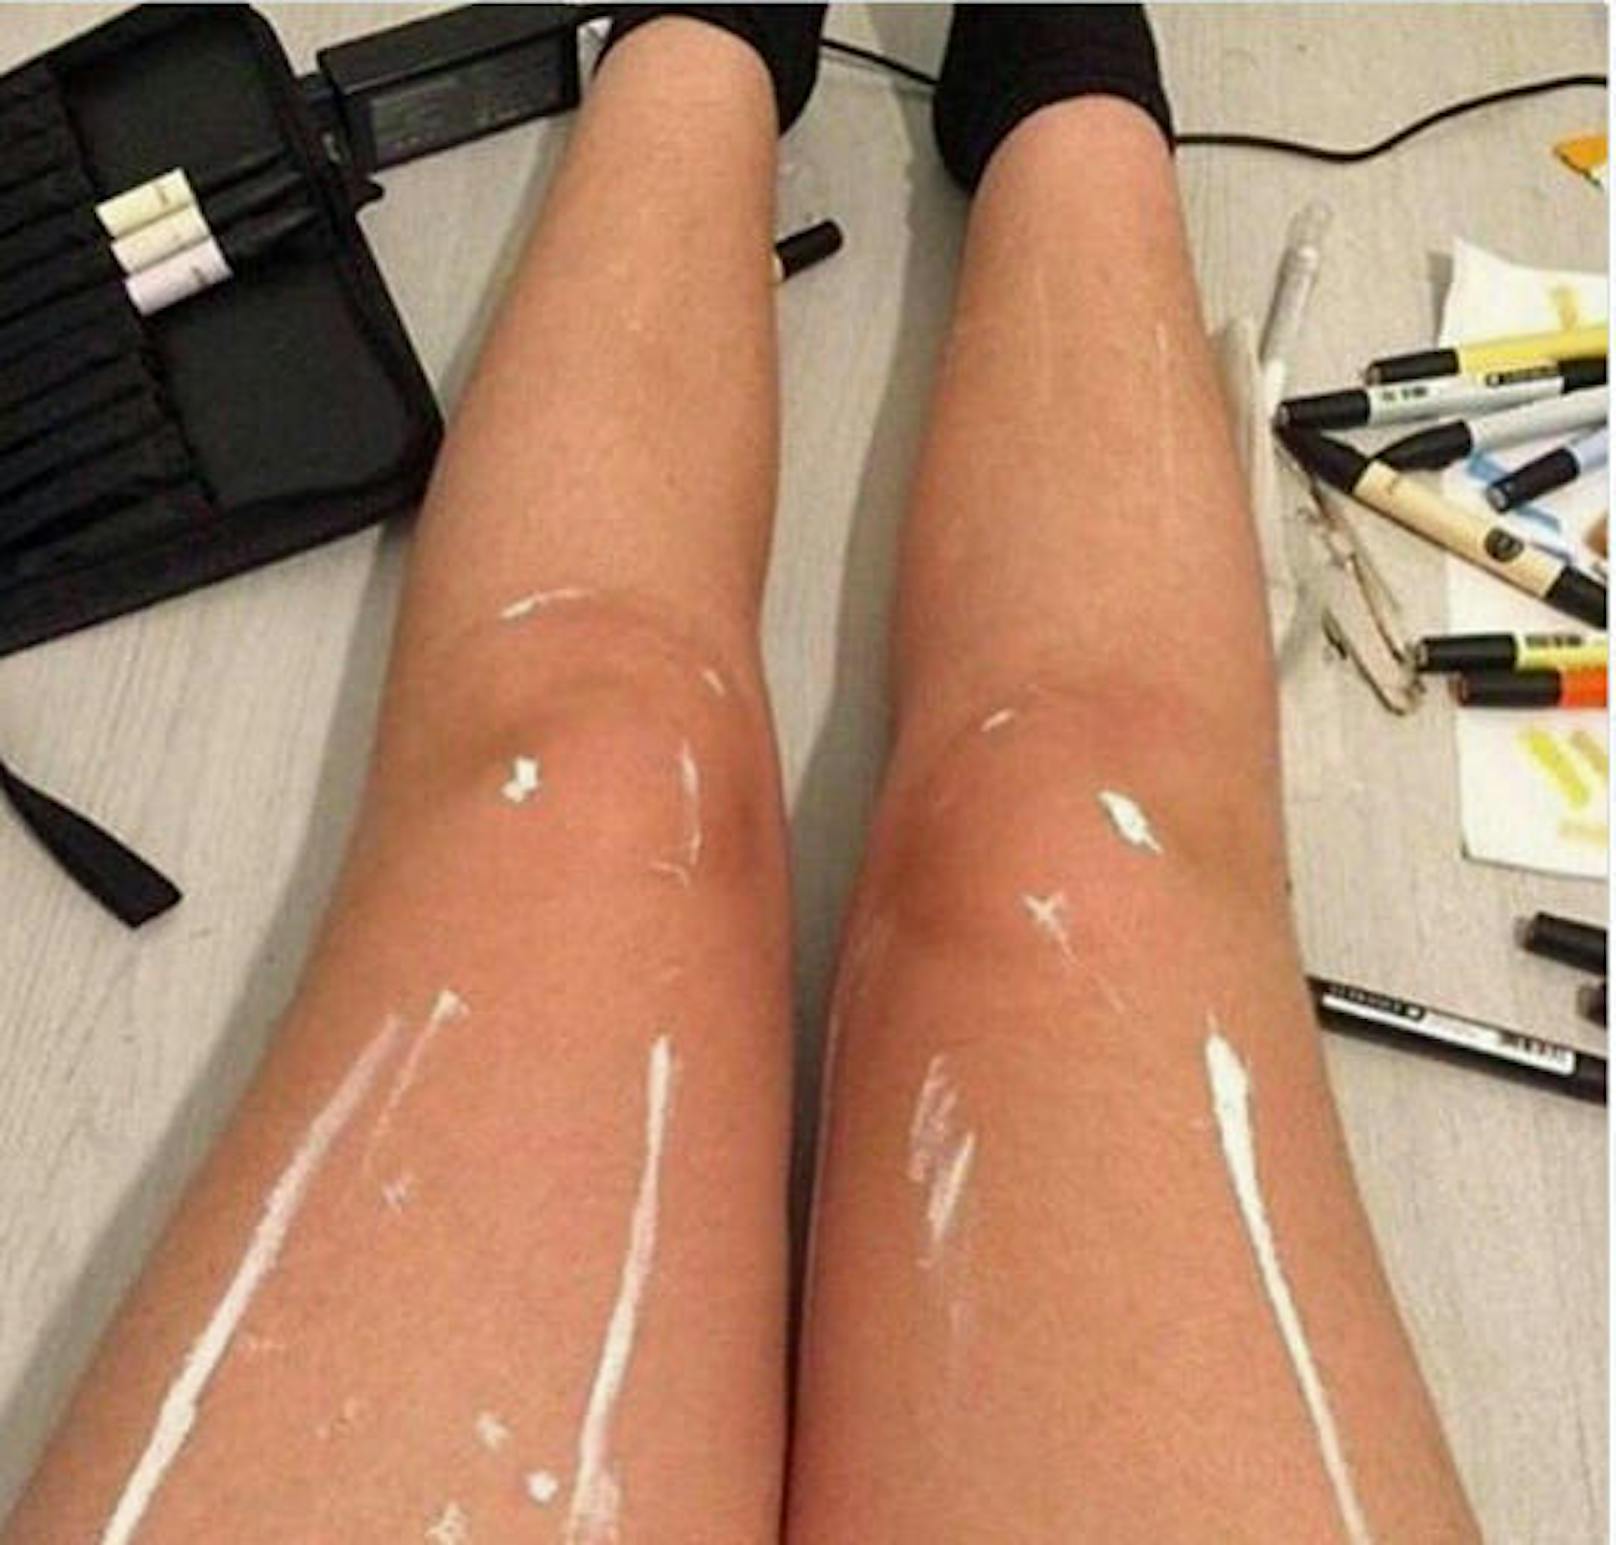 Auch diese Beine sorgten für Furore: Sind sie eingeölt oder mit weißer Farbe beschmiert?